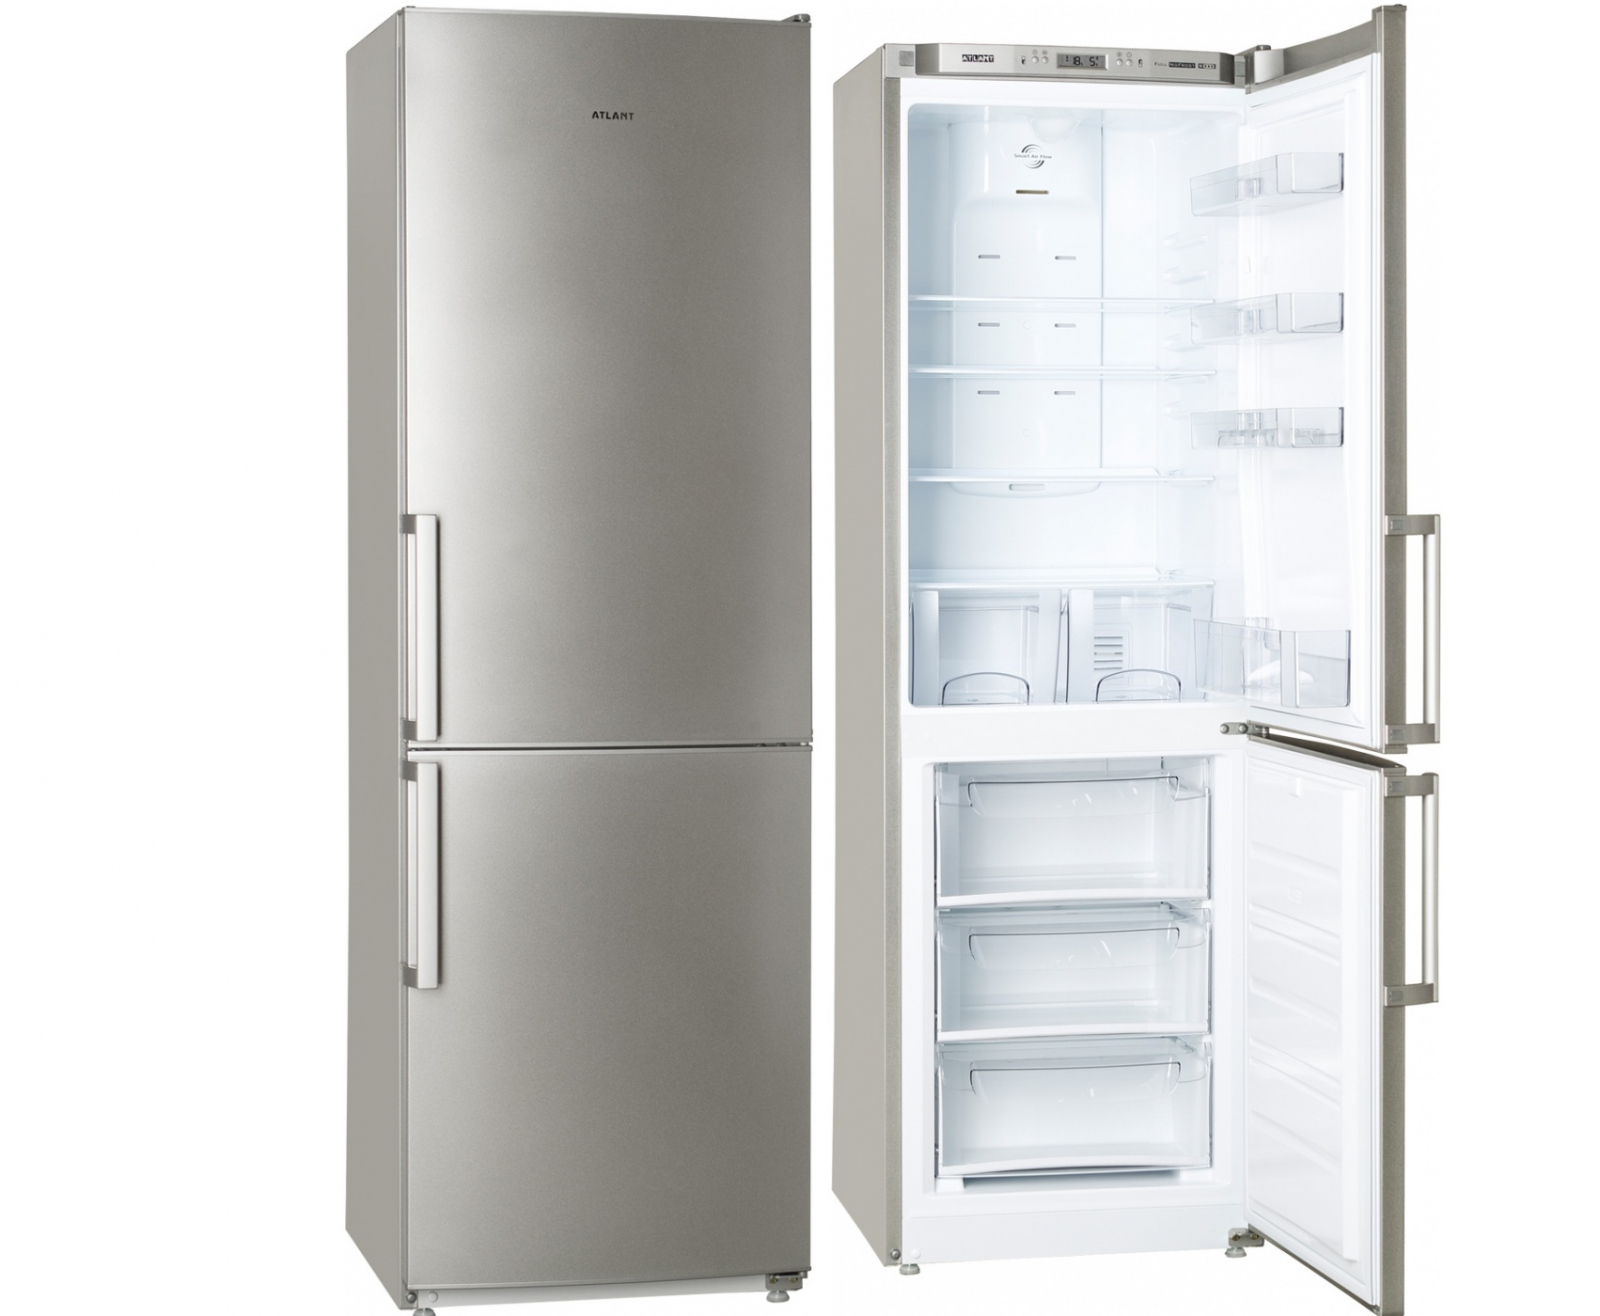 холодильник atlant xm 4421-080 n, купить в Красноярске холодильник atlant xm 4421-080 n,  купить в Красноярске дешево холодильник atlant xm 4421-080 n, купить в Красноярске минимальной цене холодильник atlant xm 4421-080 n